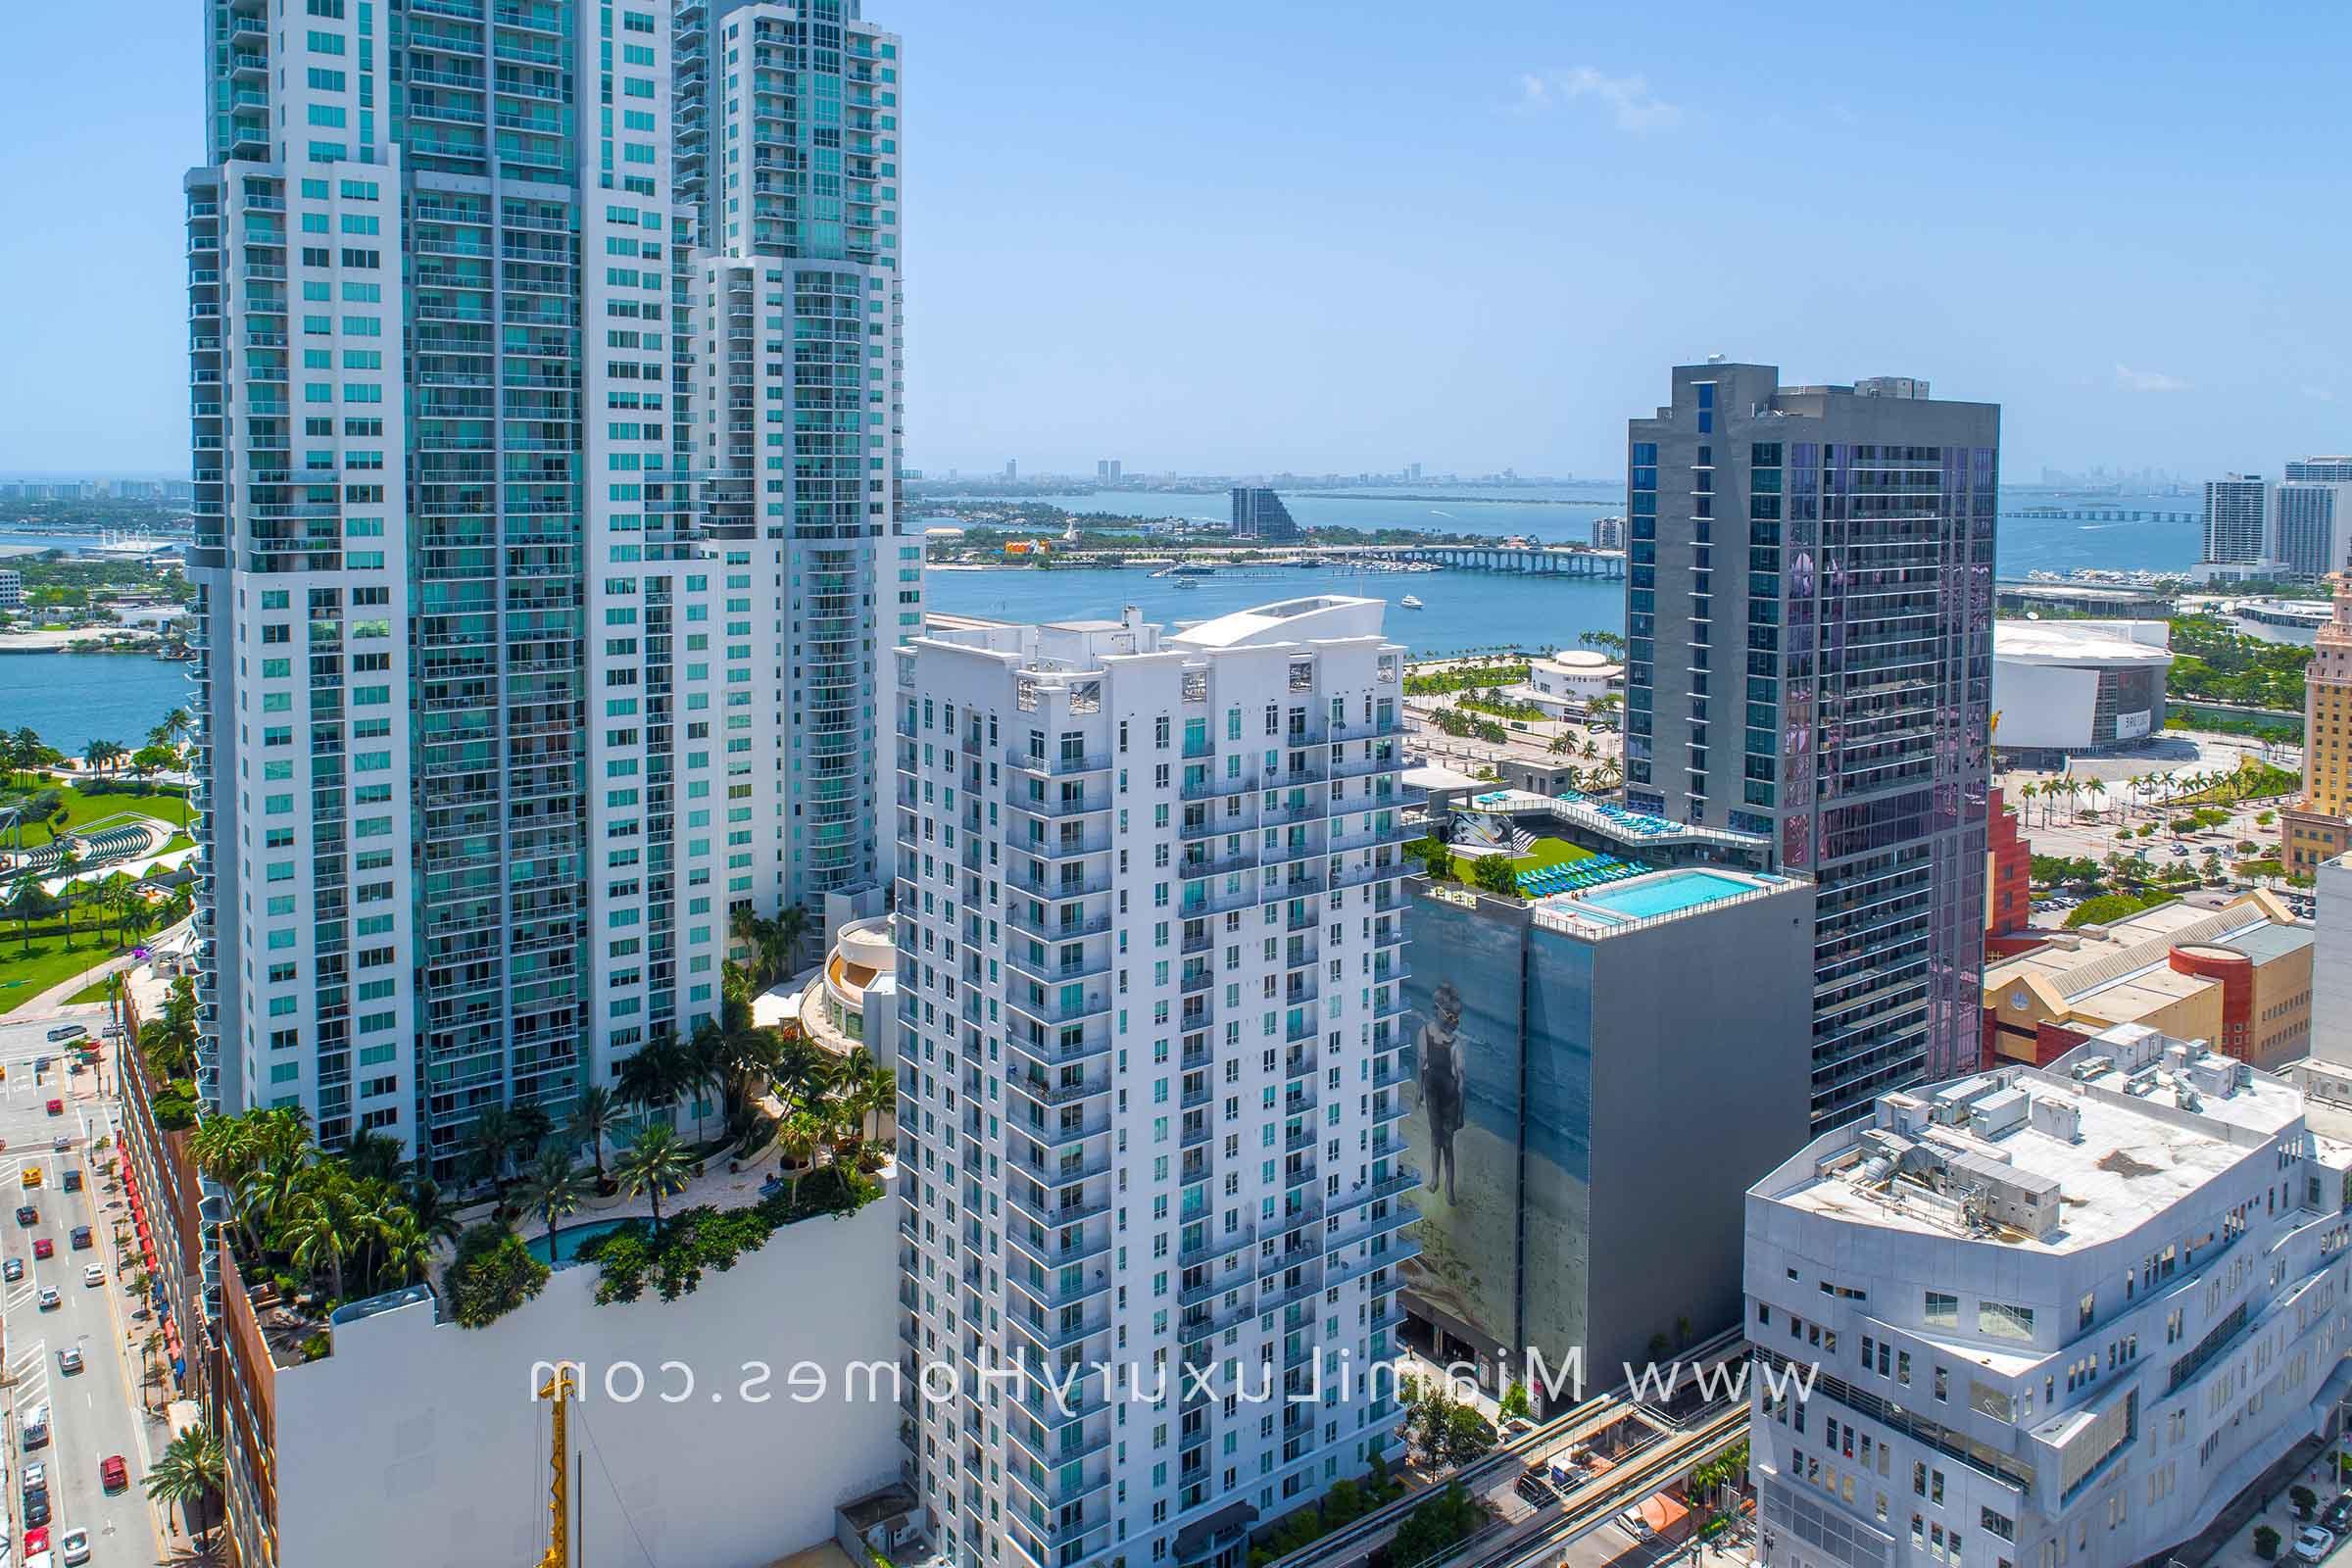 Loft Downtown I Condo Building in Miami